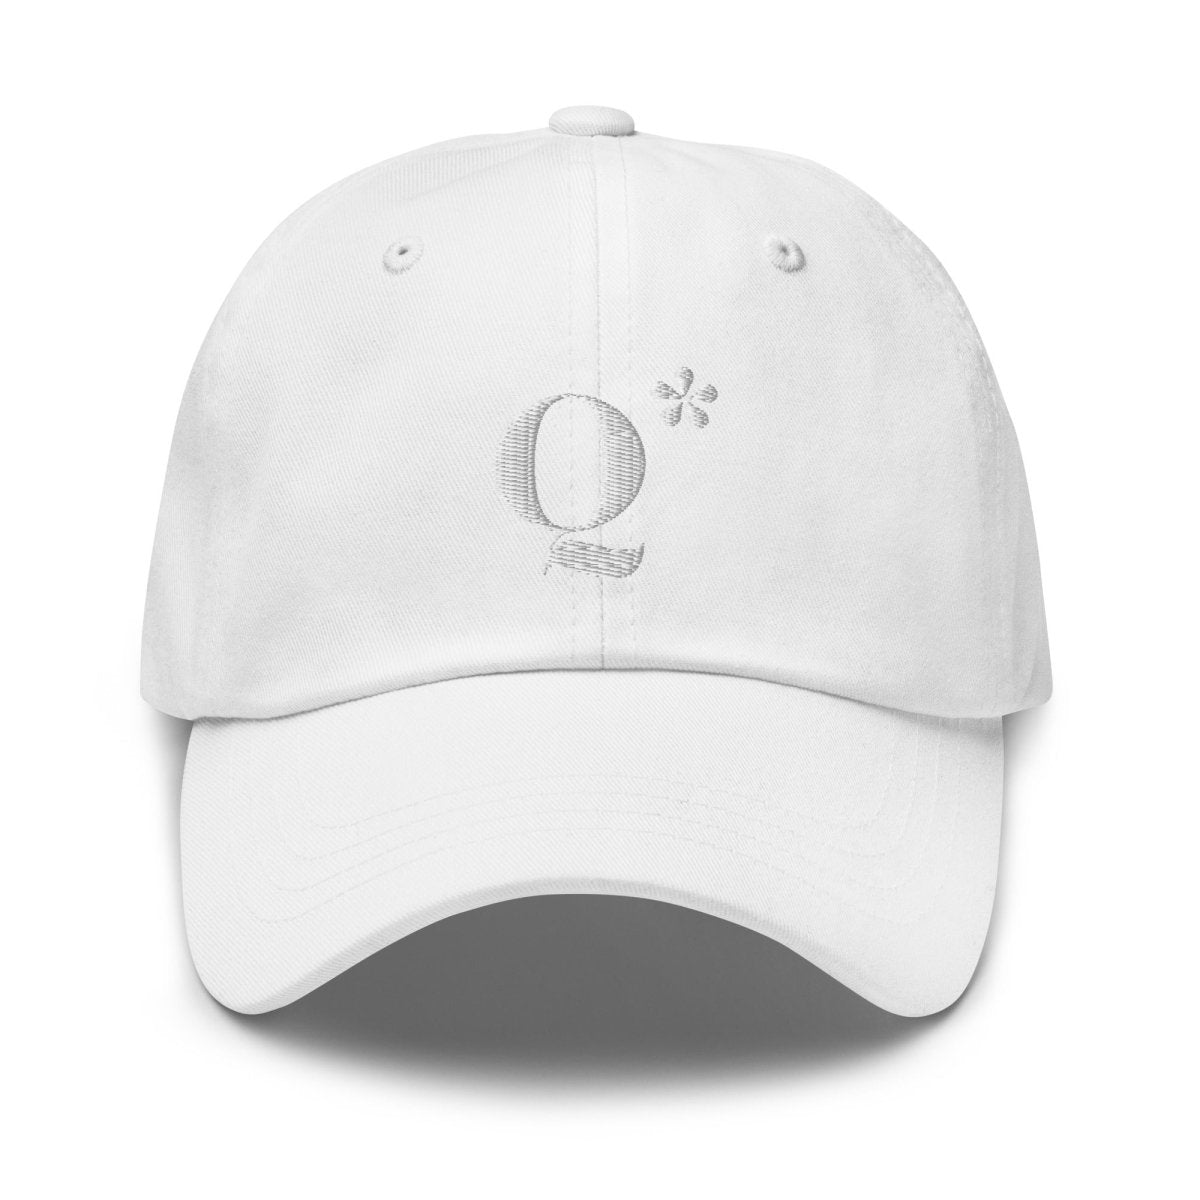 Q* (Q - Star) Embroidered Cap 3 - White - AI Store